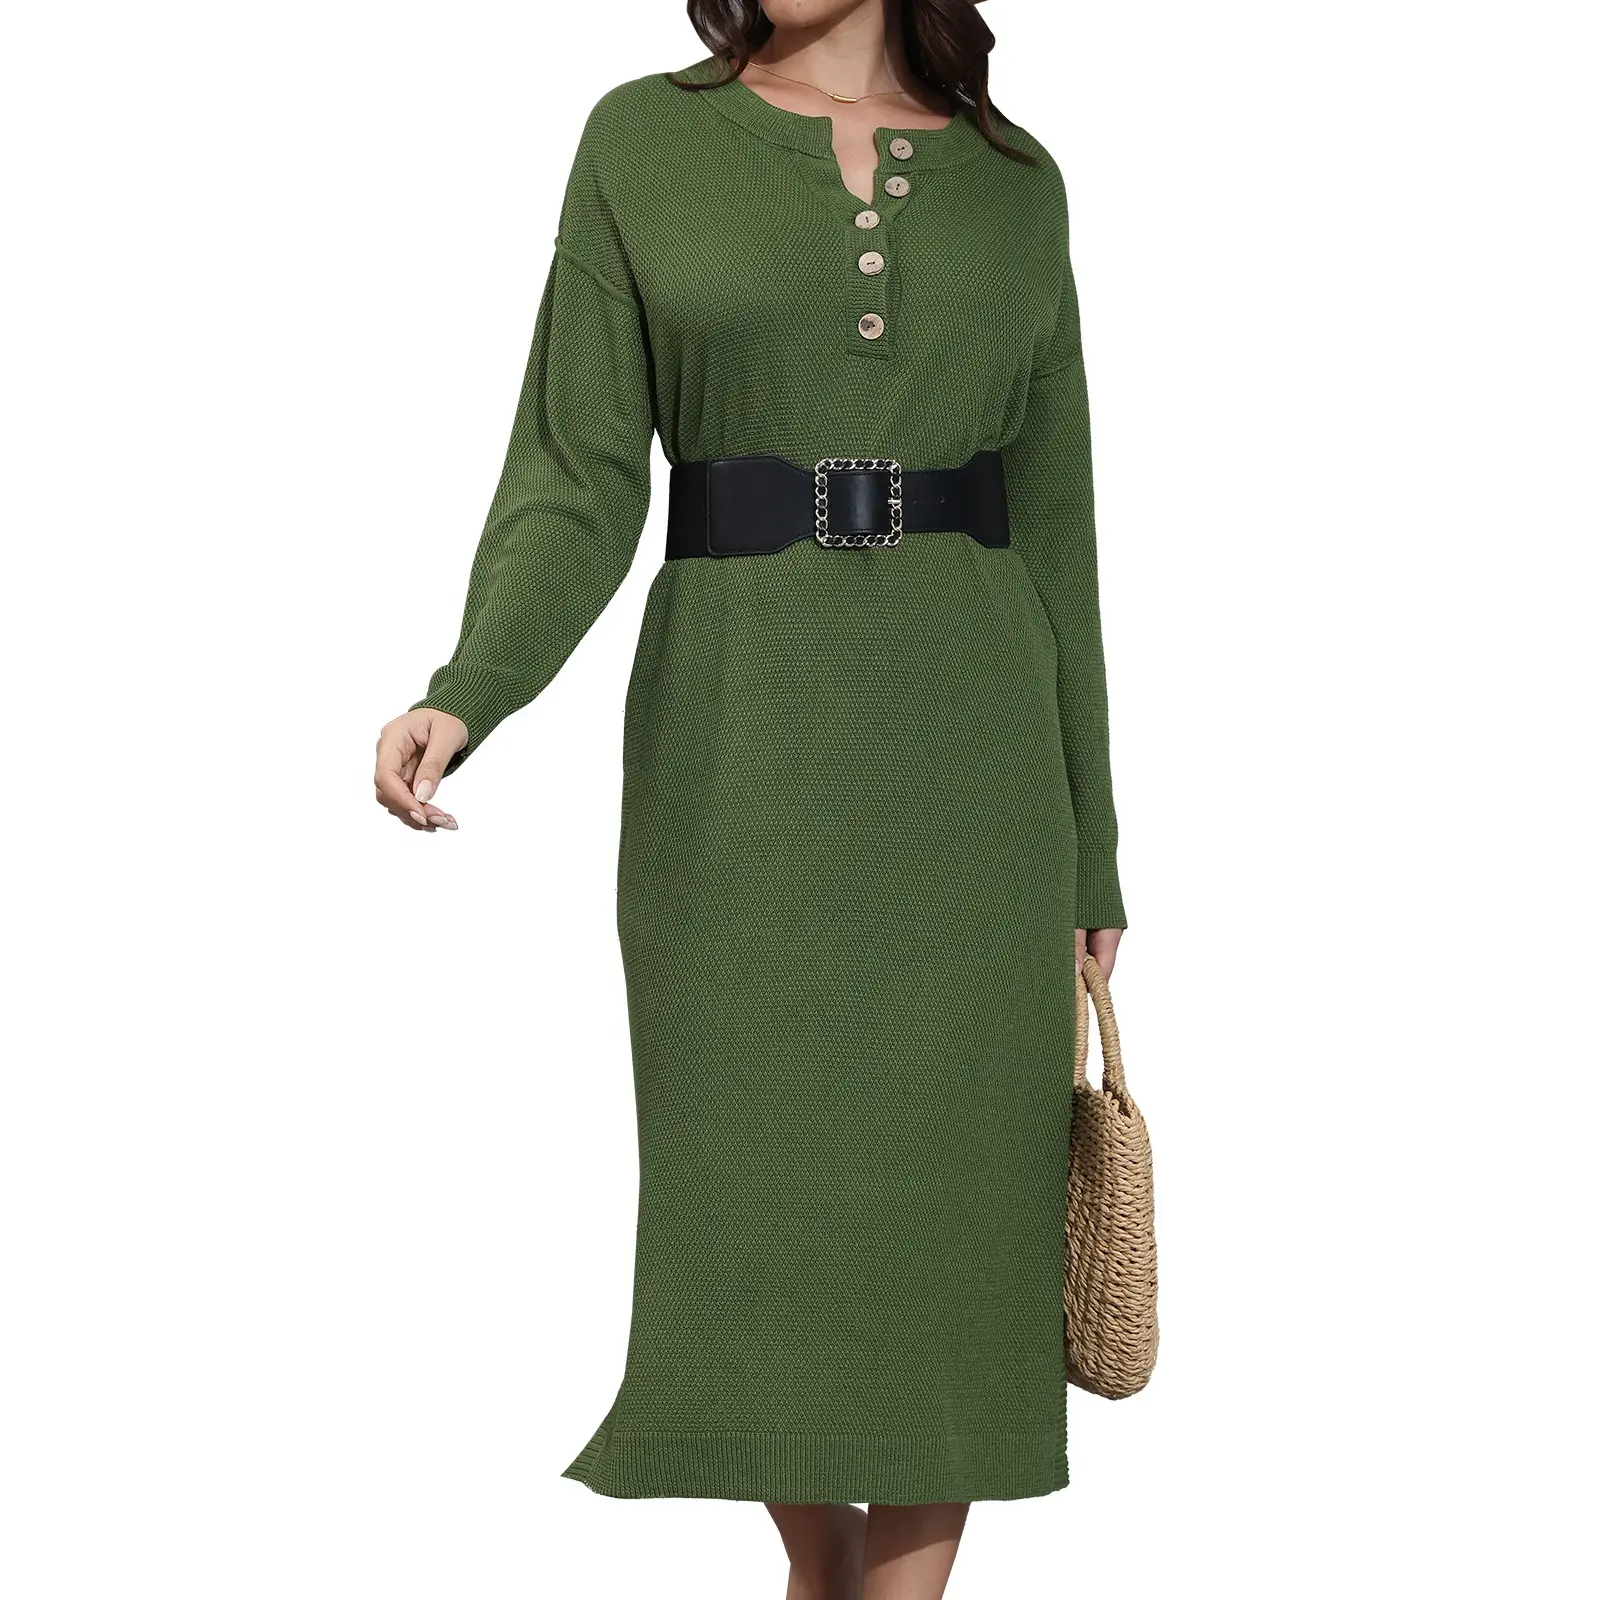 Damen langärmeliger Pullover-Kleid lässig locker gestrickt langes Kleid Rundhalsausschnitt Knopfverschluss Strickkleid